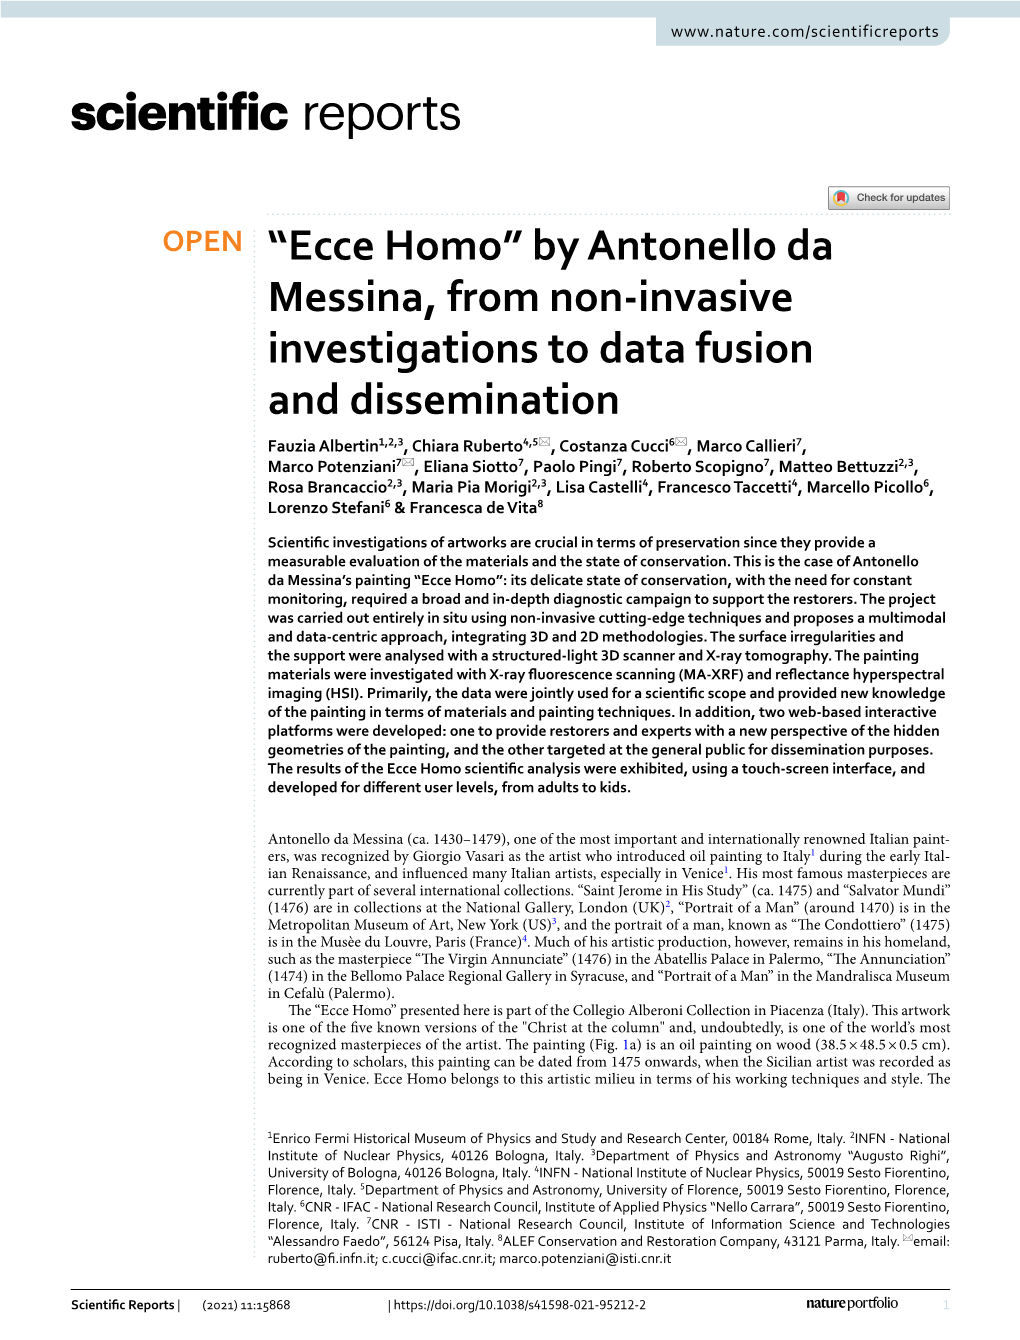 “Ecce Homo” by Antonello Da Messina, from Non-Invasive Investigations To